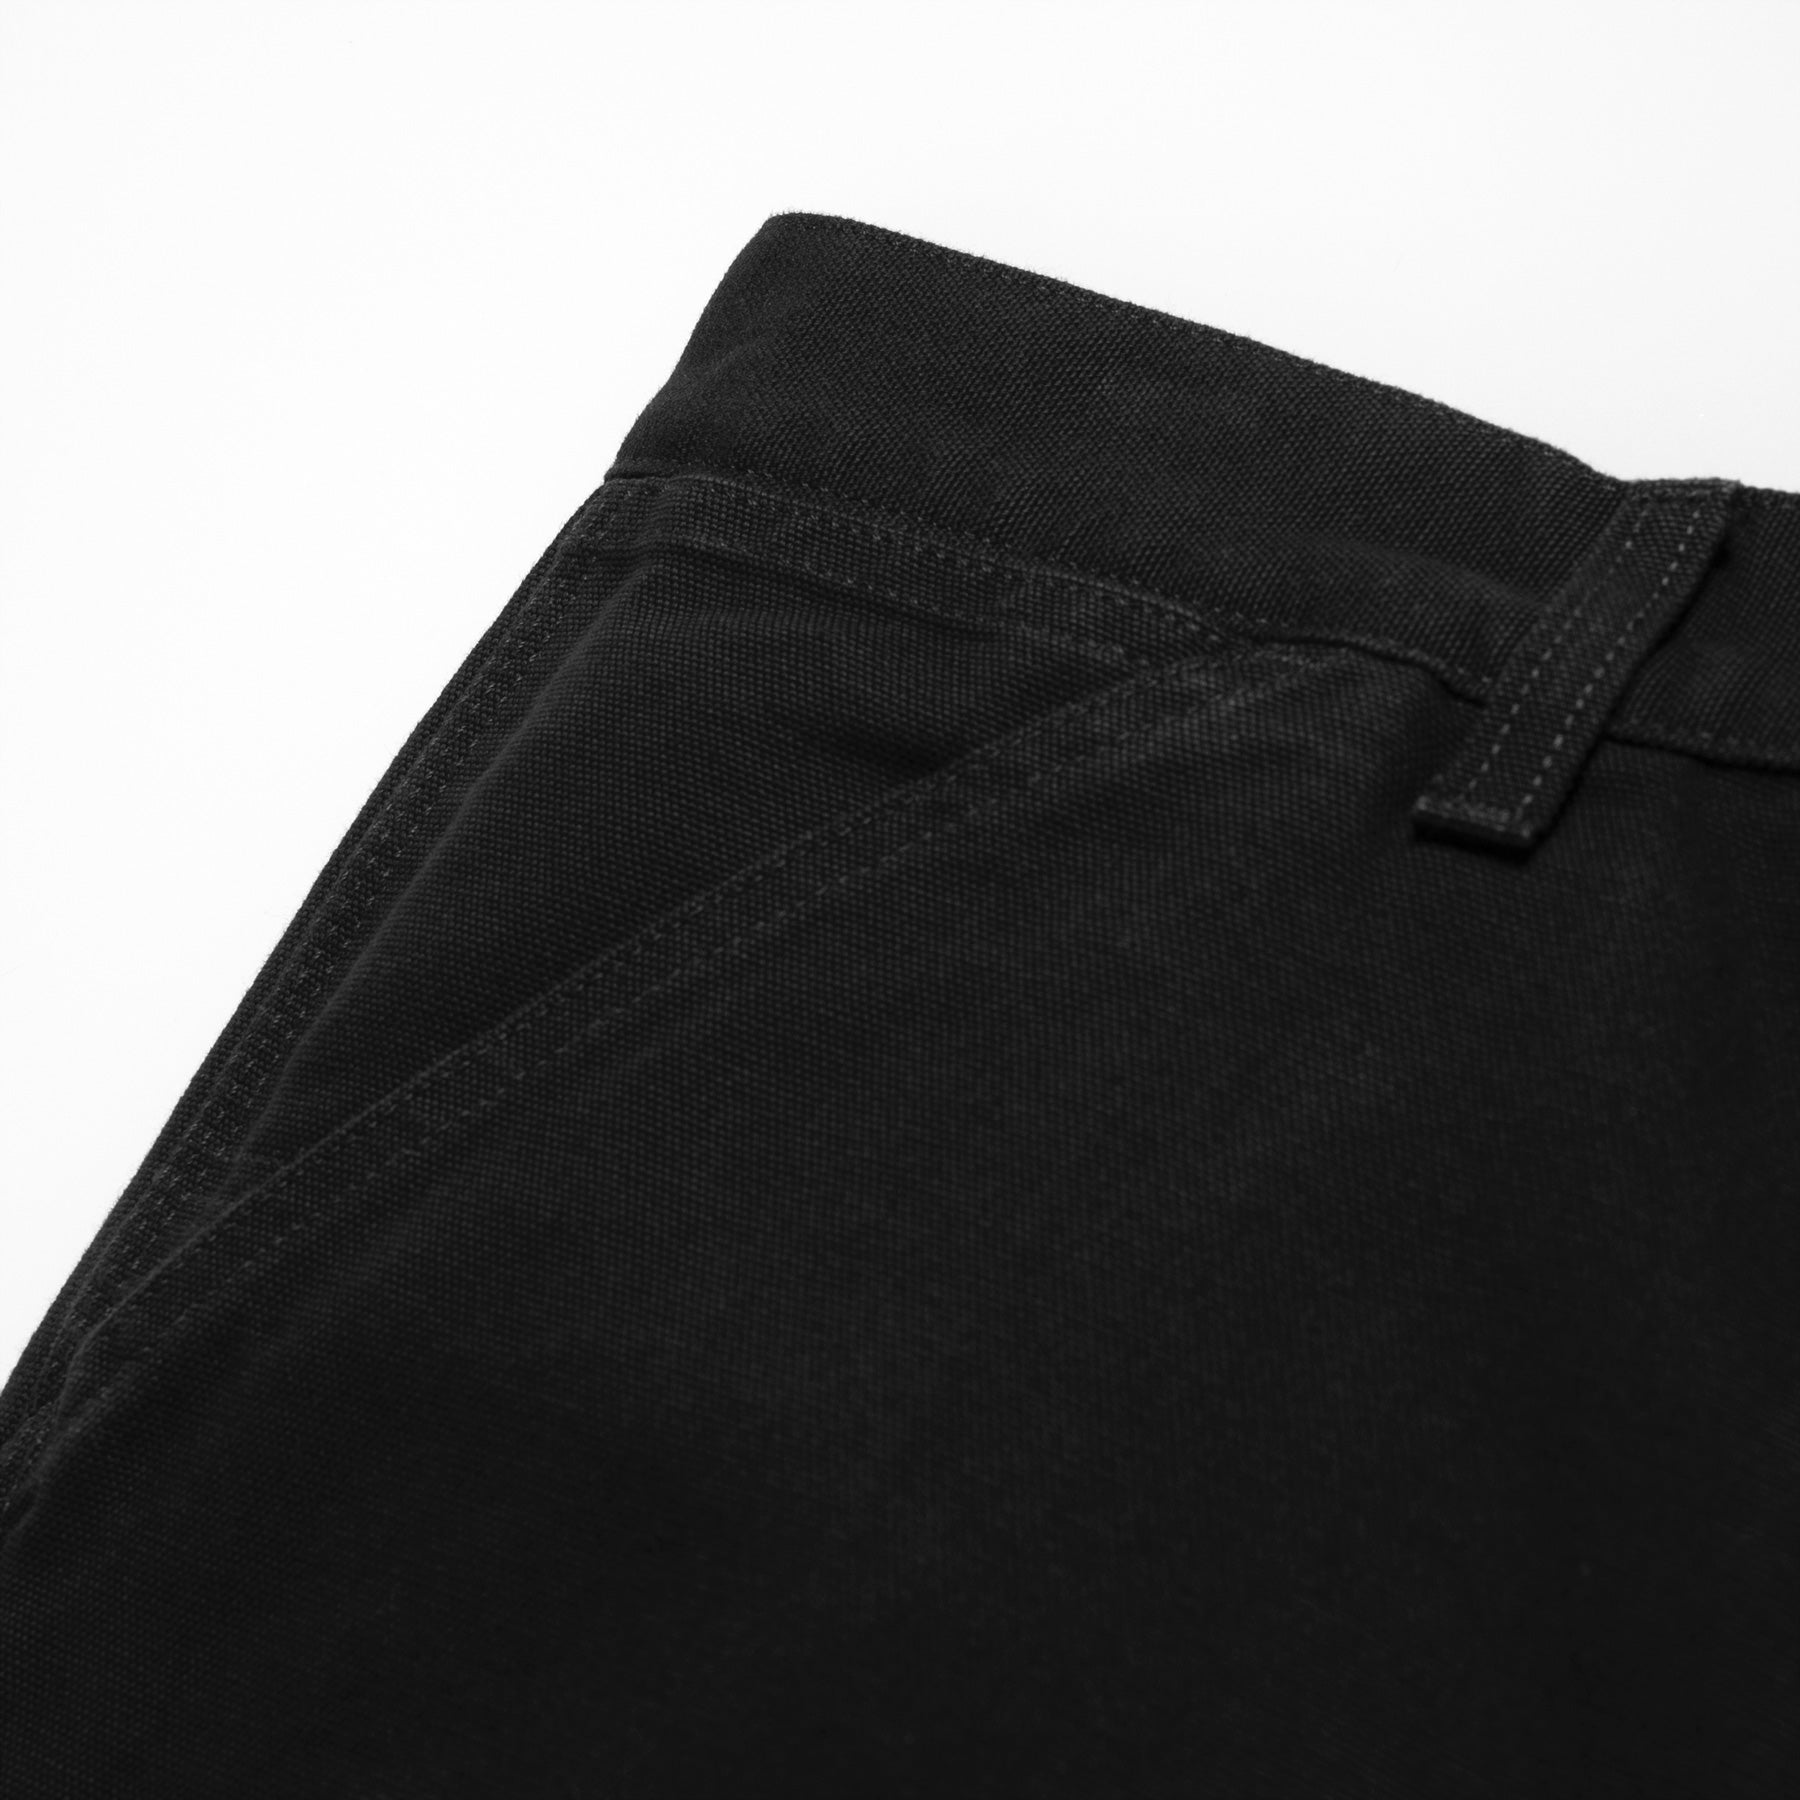 Carhartt WIP Single Knee Pant Black Rinsed. Foto de detalhe do bolso da frente.